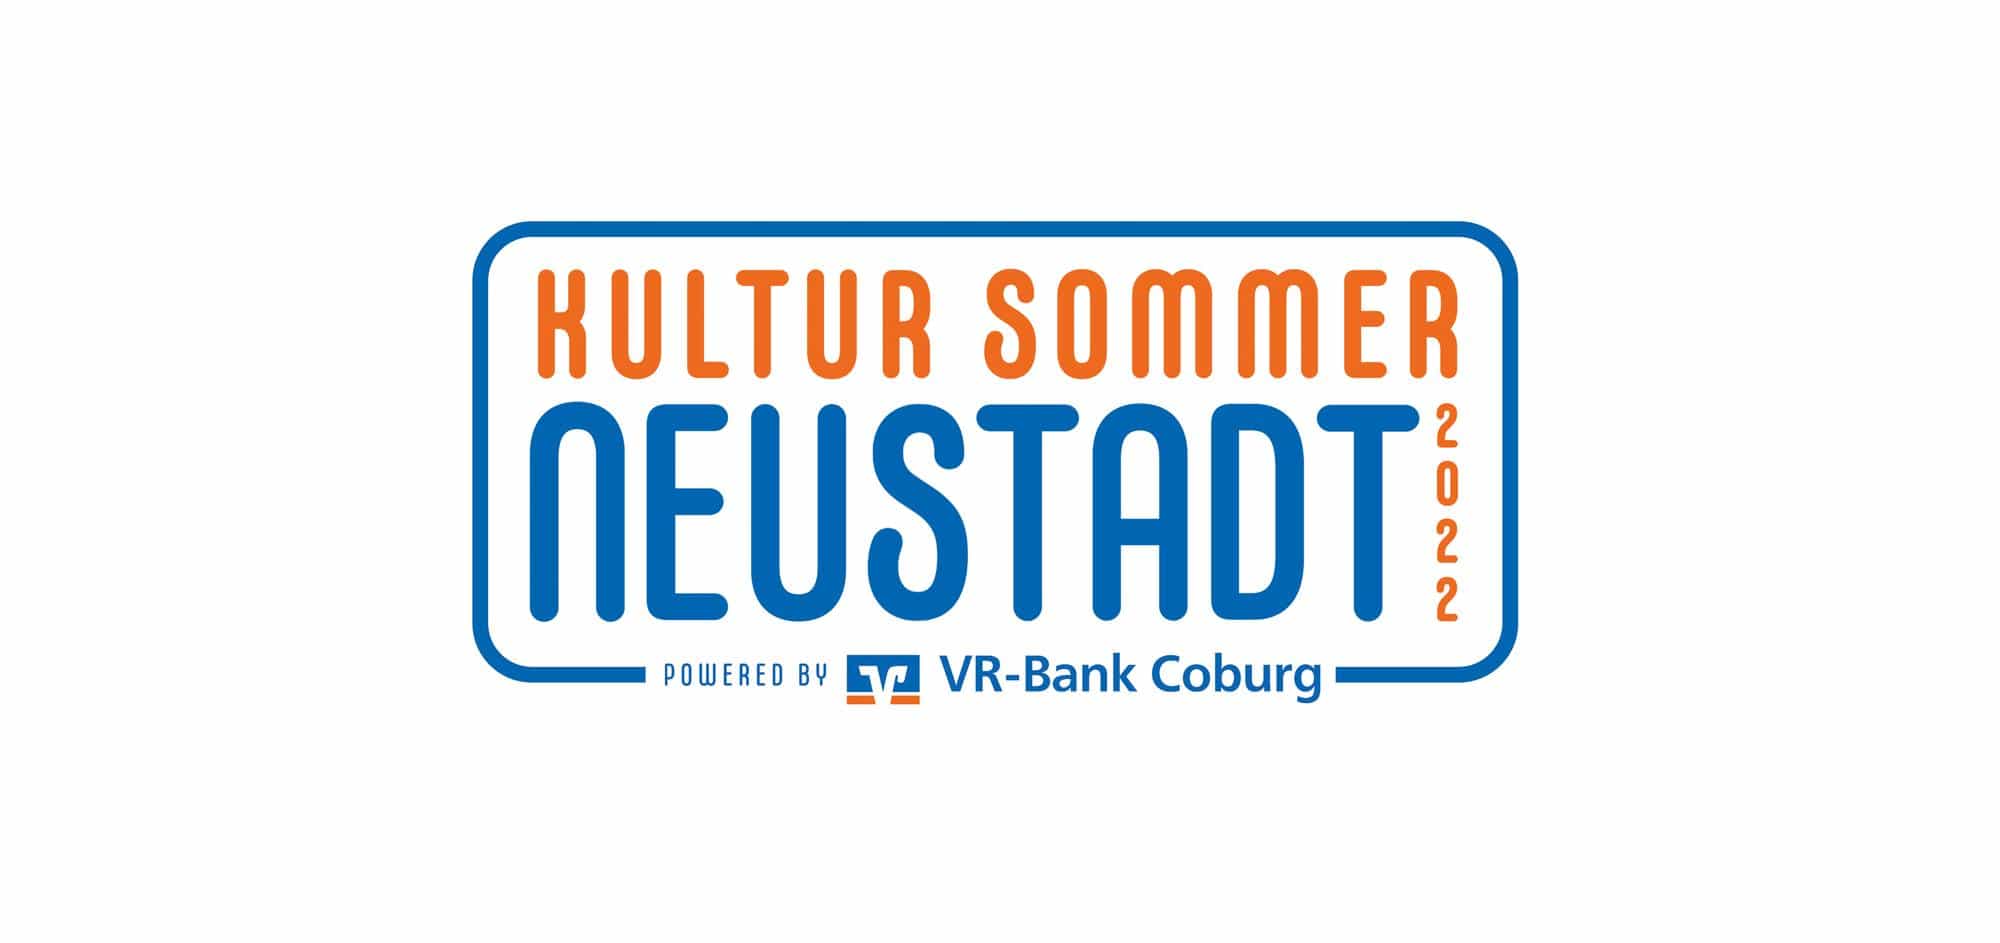 2. Kultursommer Neustadt 2022 (© Agentur Streckenbach GmbH & Co. KG)